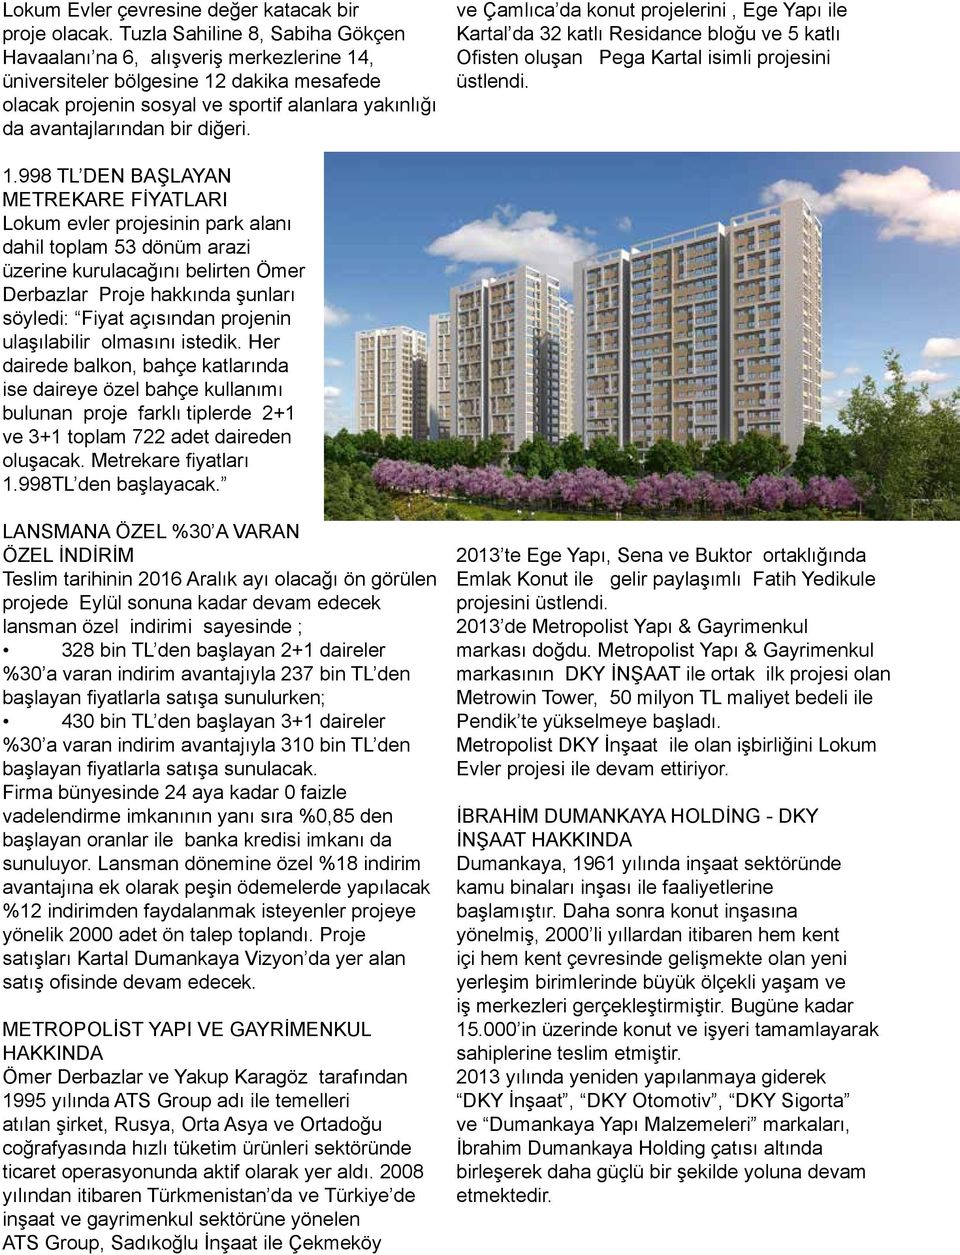 diğeri. ve Çamlıca da konut projelerini, Ege Yapı ile Kartal da 32 katlı Residance bloğu ve 5 katlı Ofisten oluşan Pega Kartal isimli projesini üstlendi. 1.